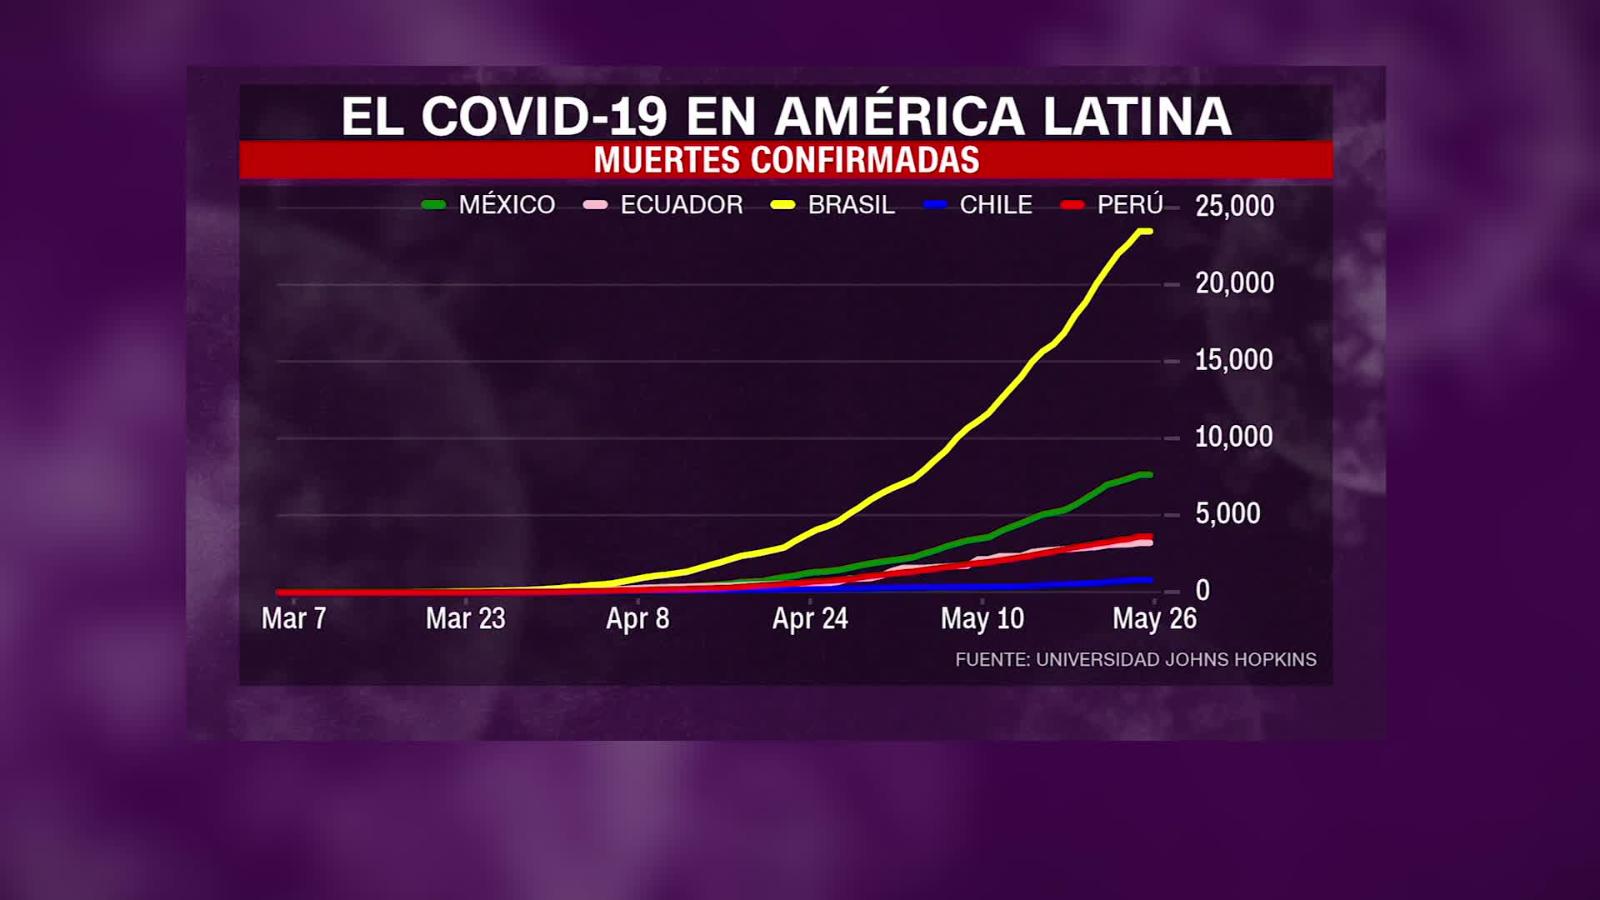 Conoce la situación actual de los países más afectados por el covid19 de América Latina Video